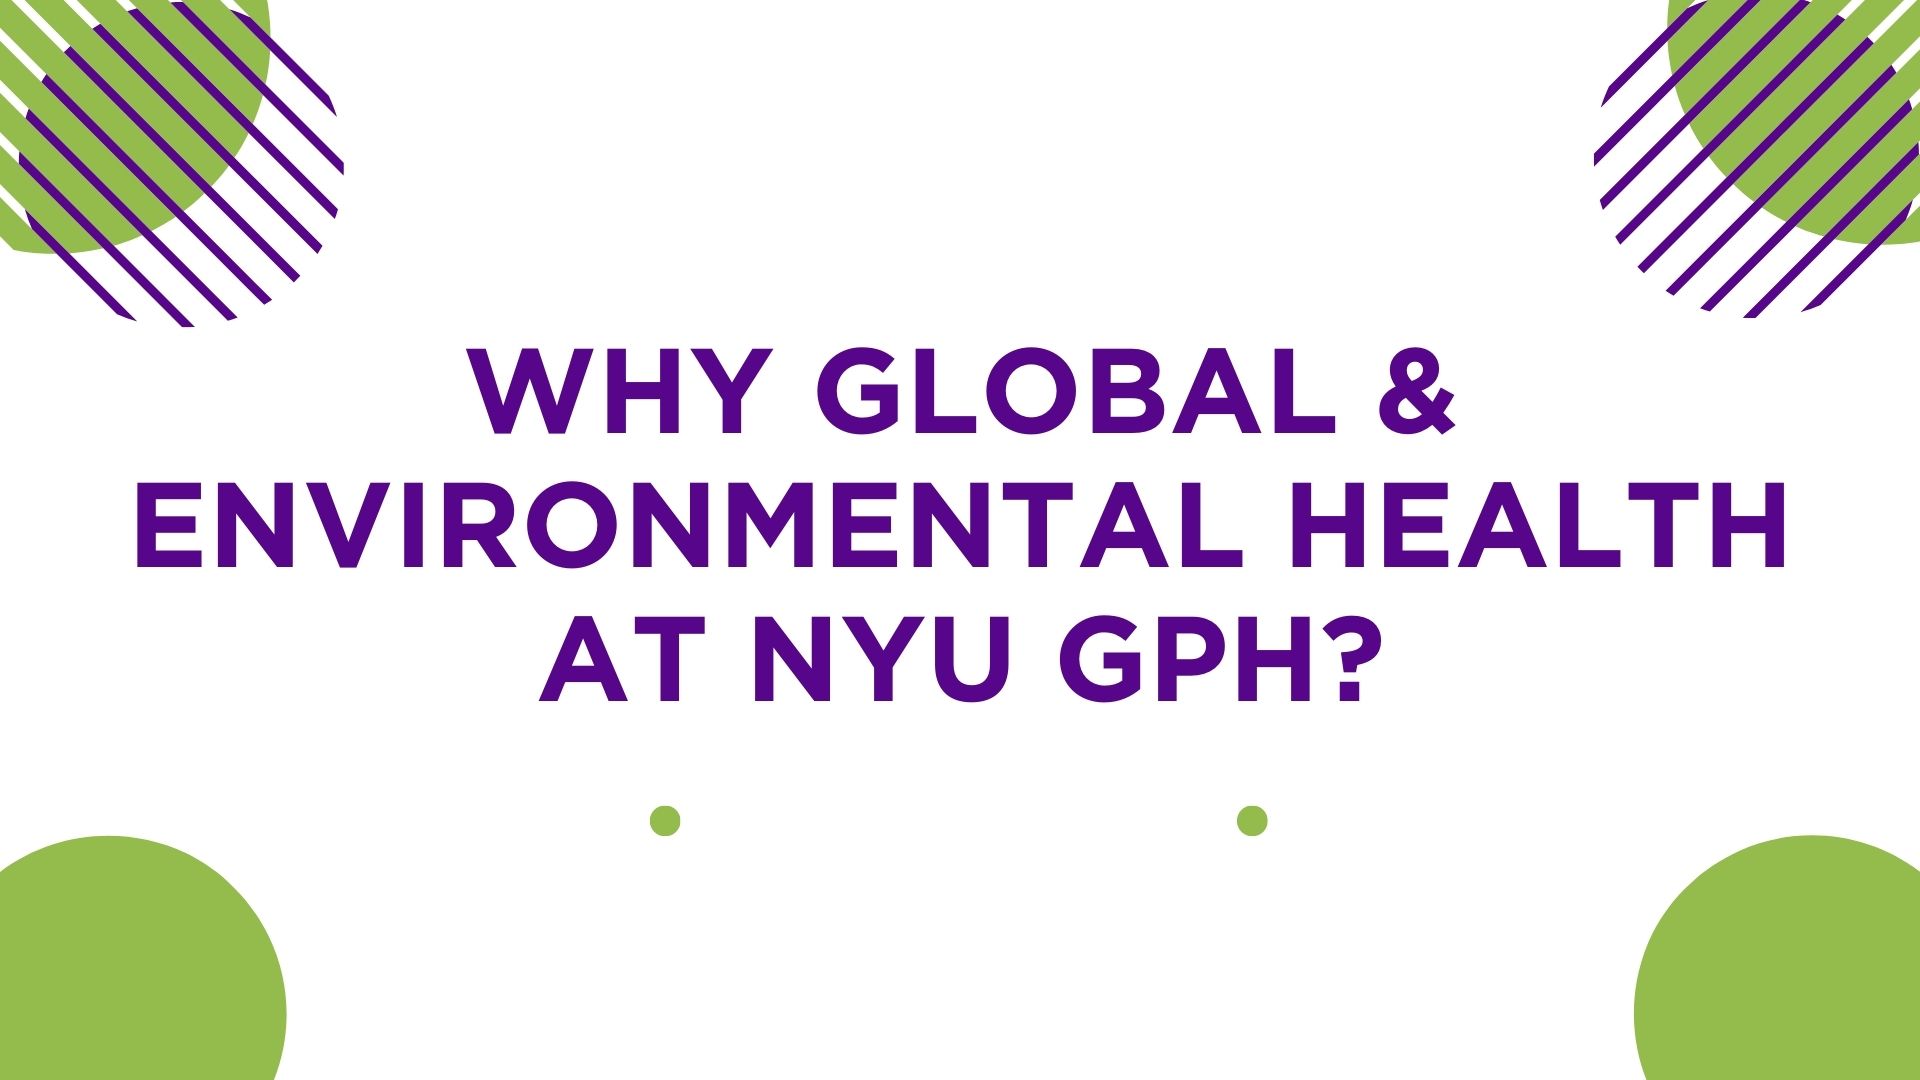 Why Global & Environmental Health at NYU GPH?